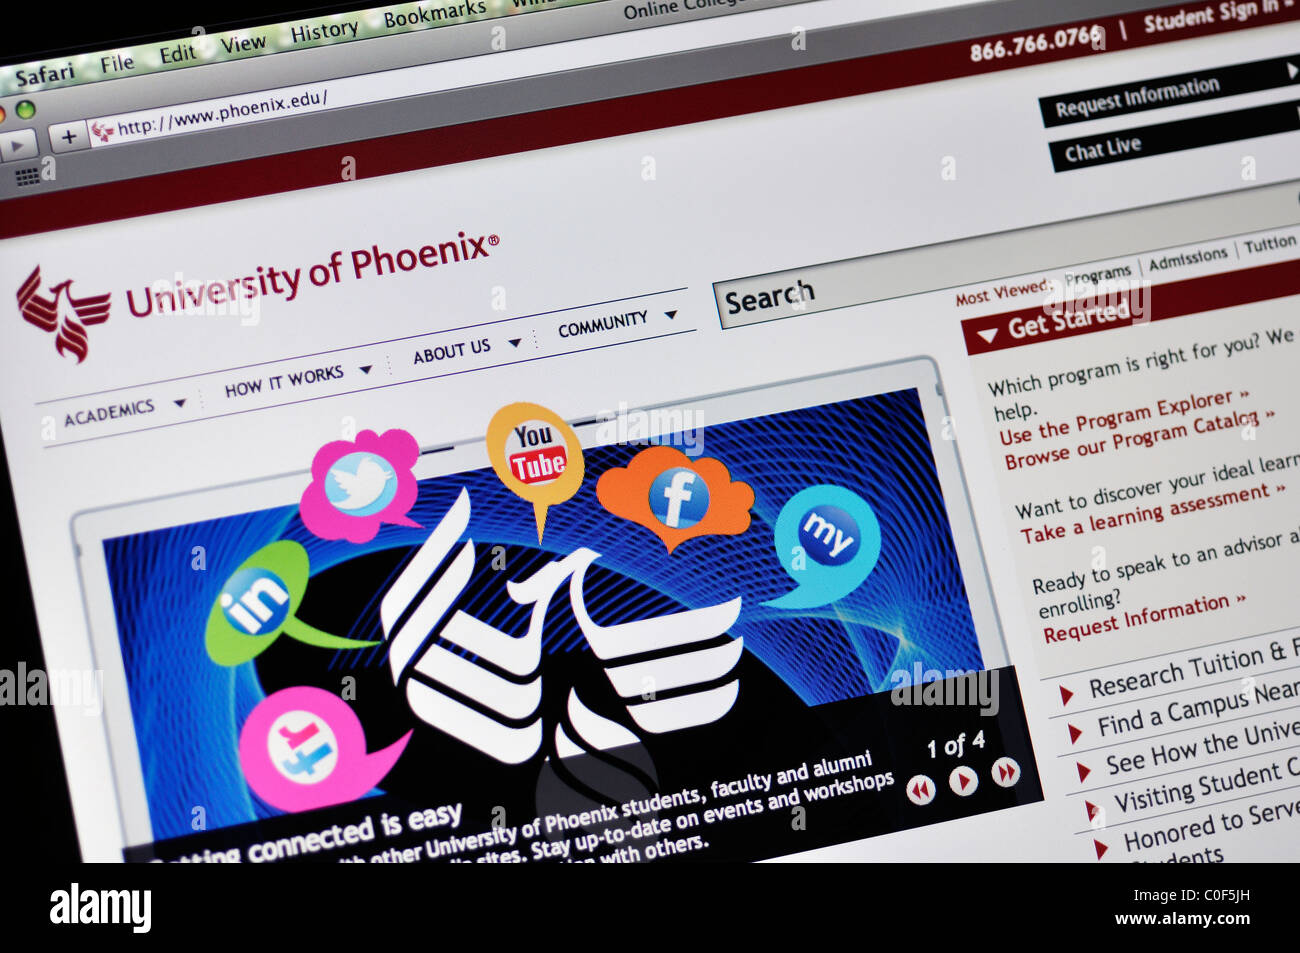 University of Phoenix website Stock Photo